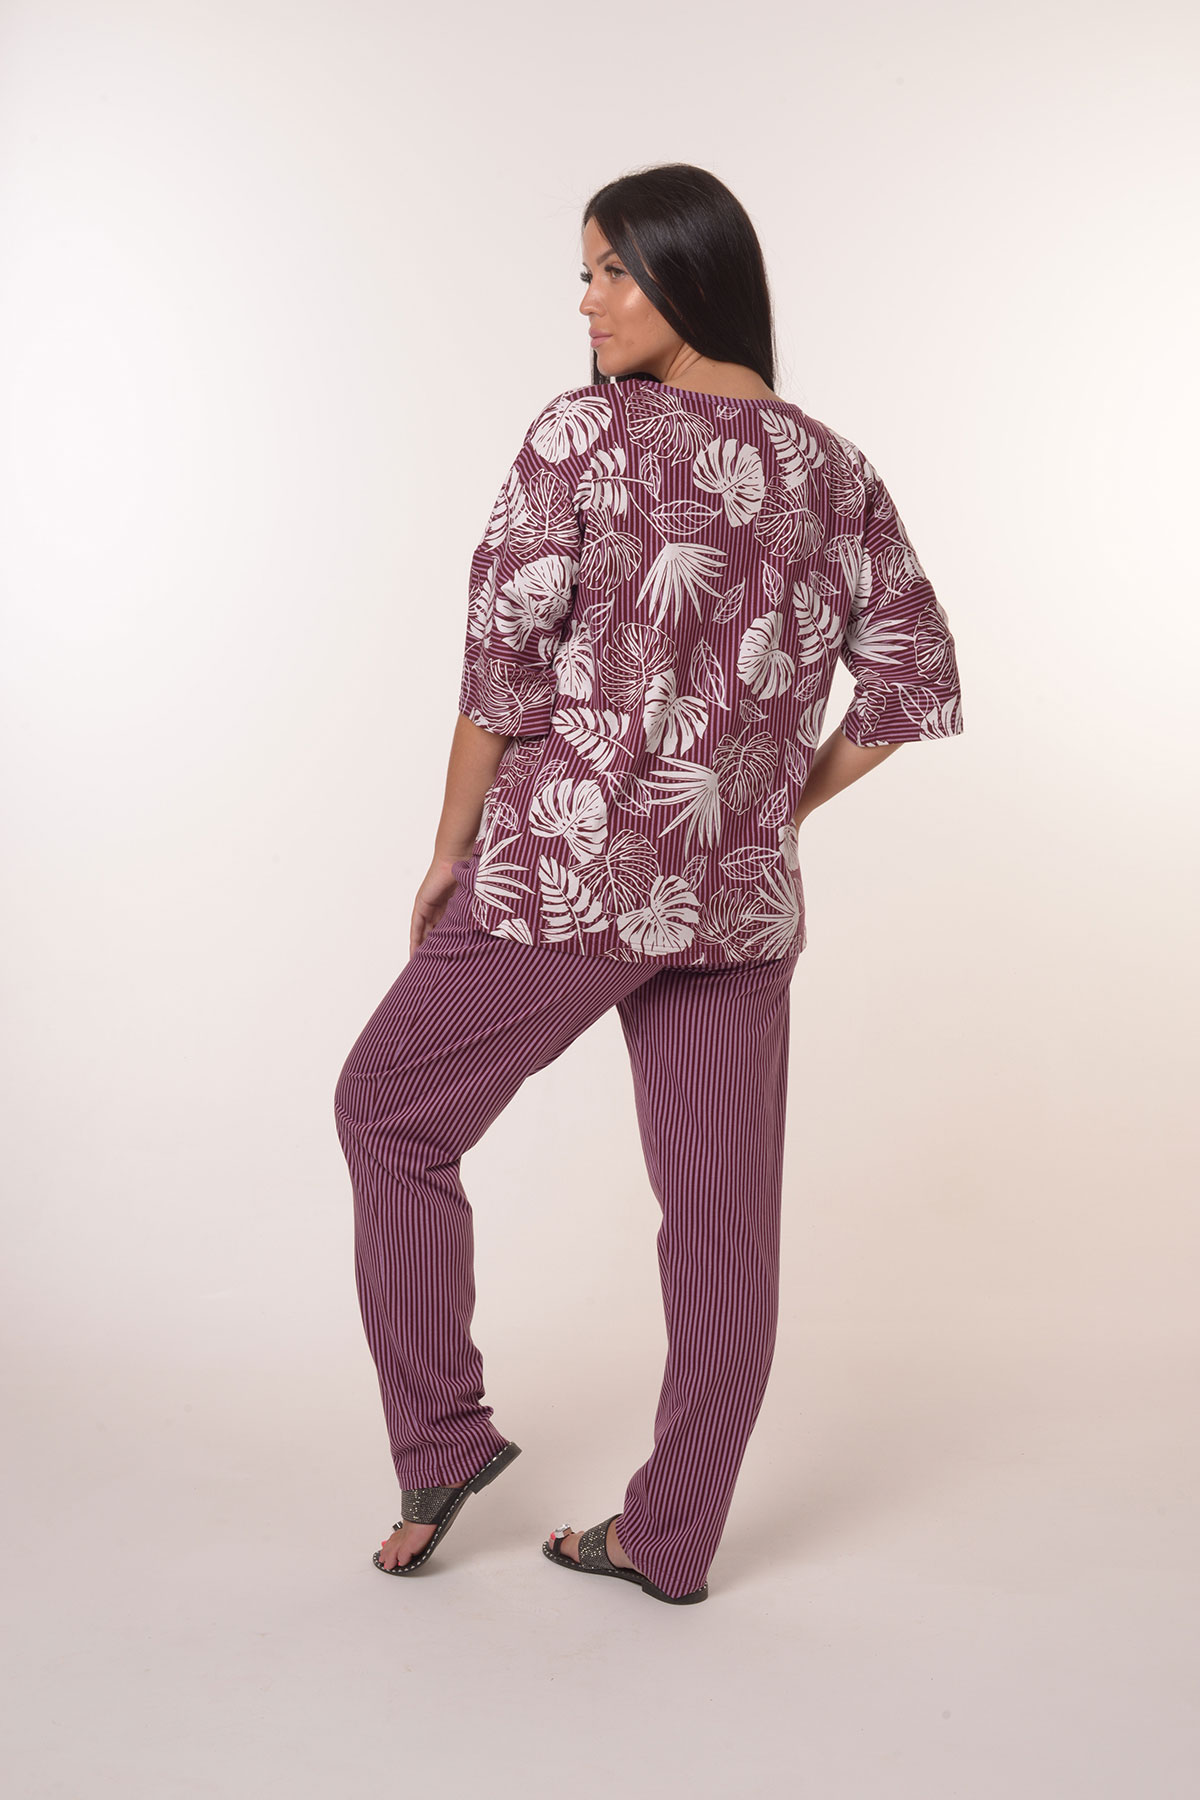 Жен. костюм повседневный арт. 23-0390 Фиолетовый р. 70 Моделлини, размер 70 - фото 4